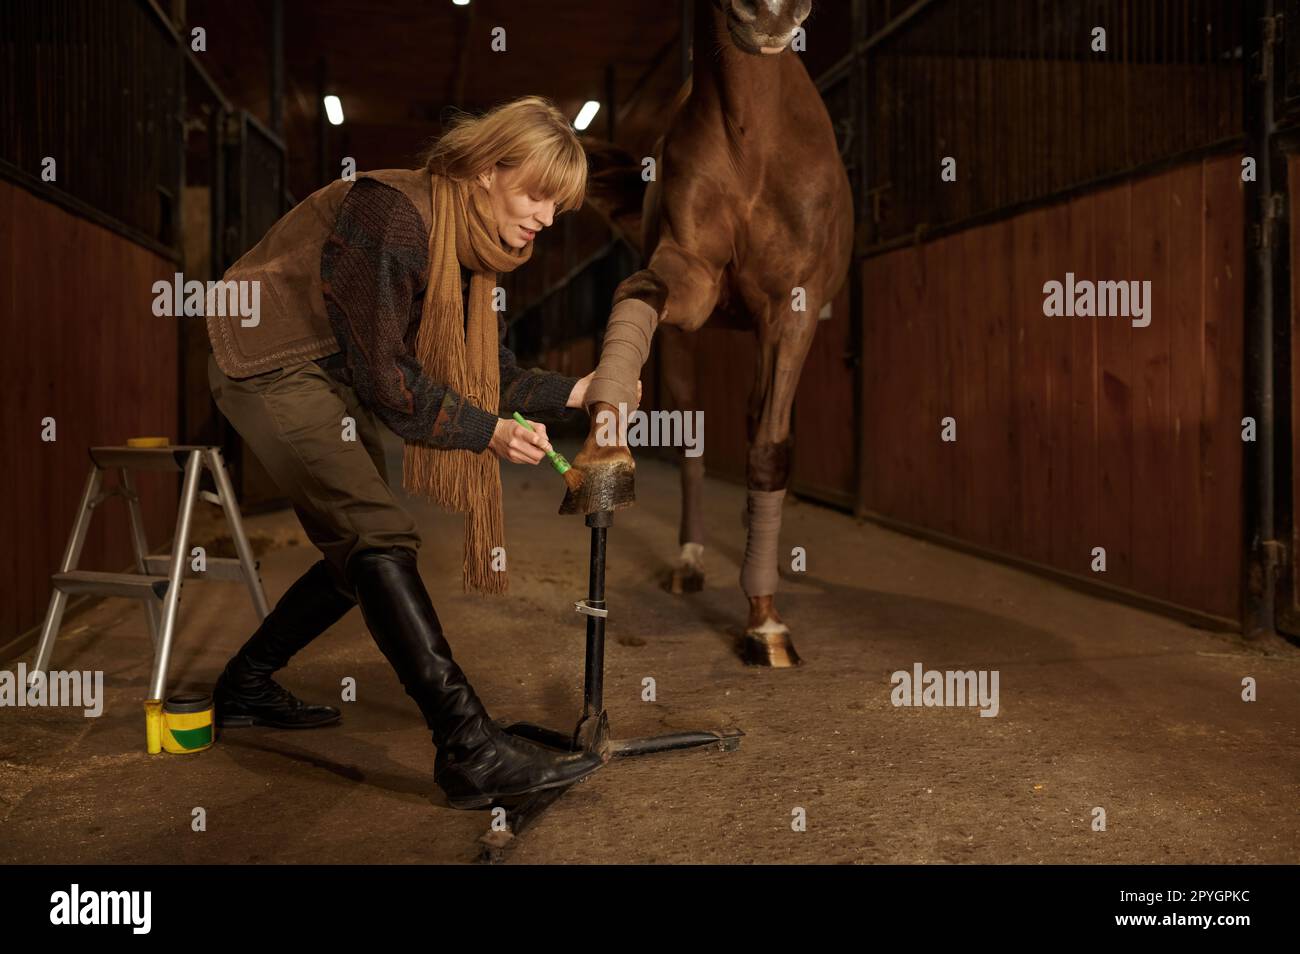 Weibliche Reiterin trägt Schutzlack auf Pferdehufe auf, um Schäden zu vermeiden Stockfoto